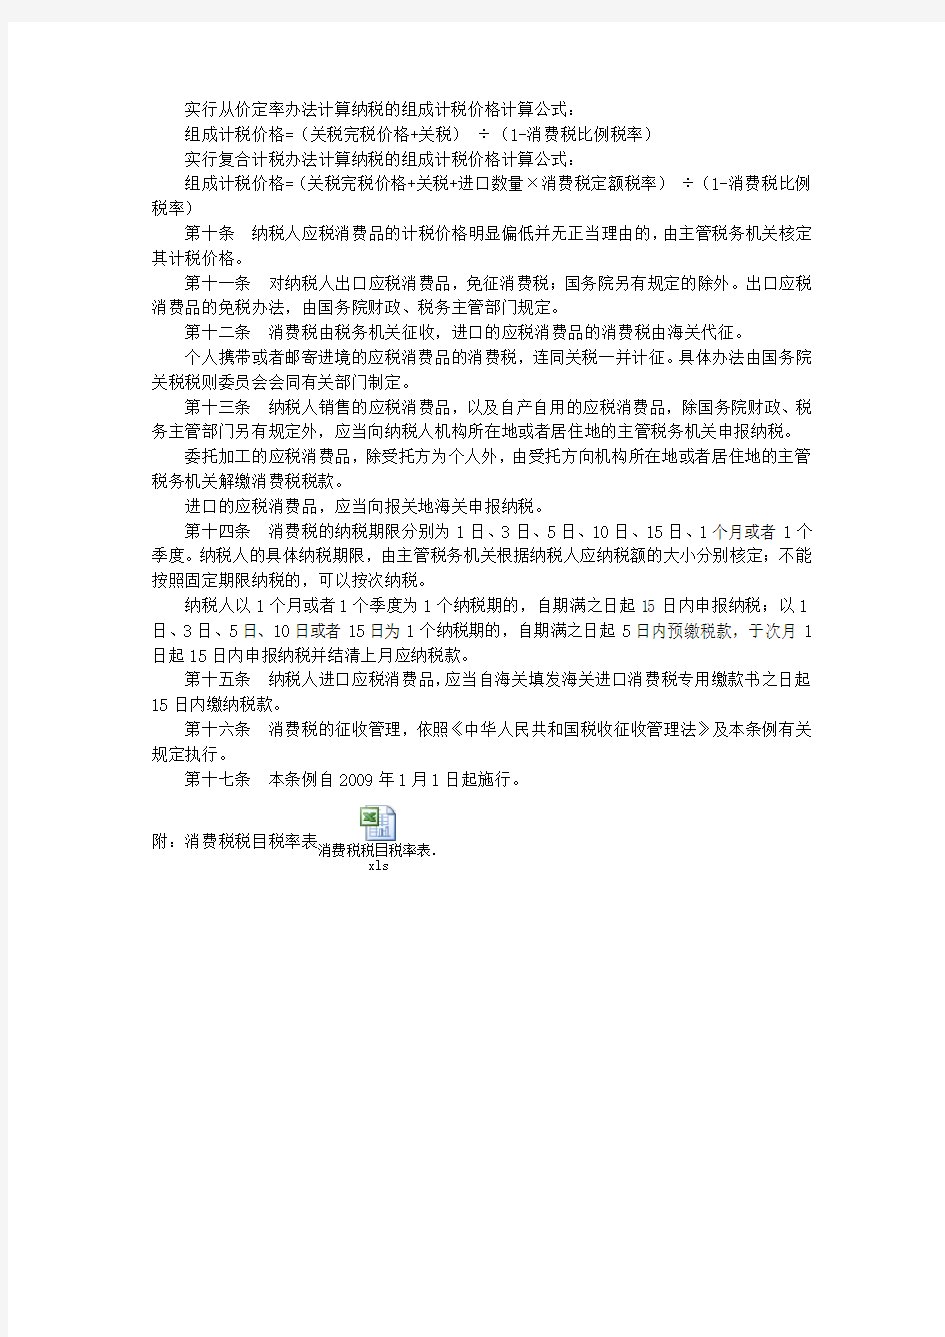 中华人民共和国消费税暂行条例、实施细则